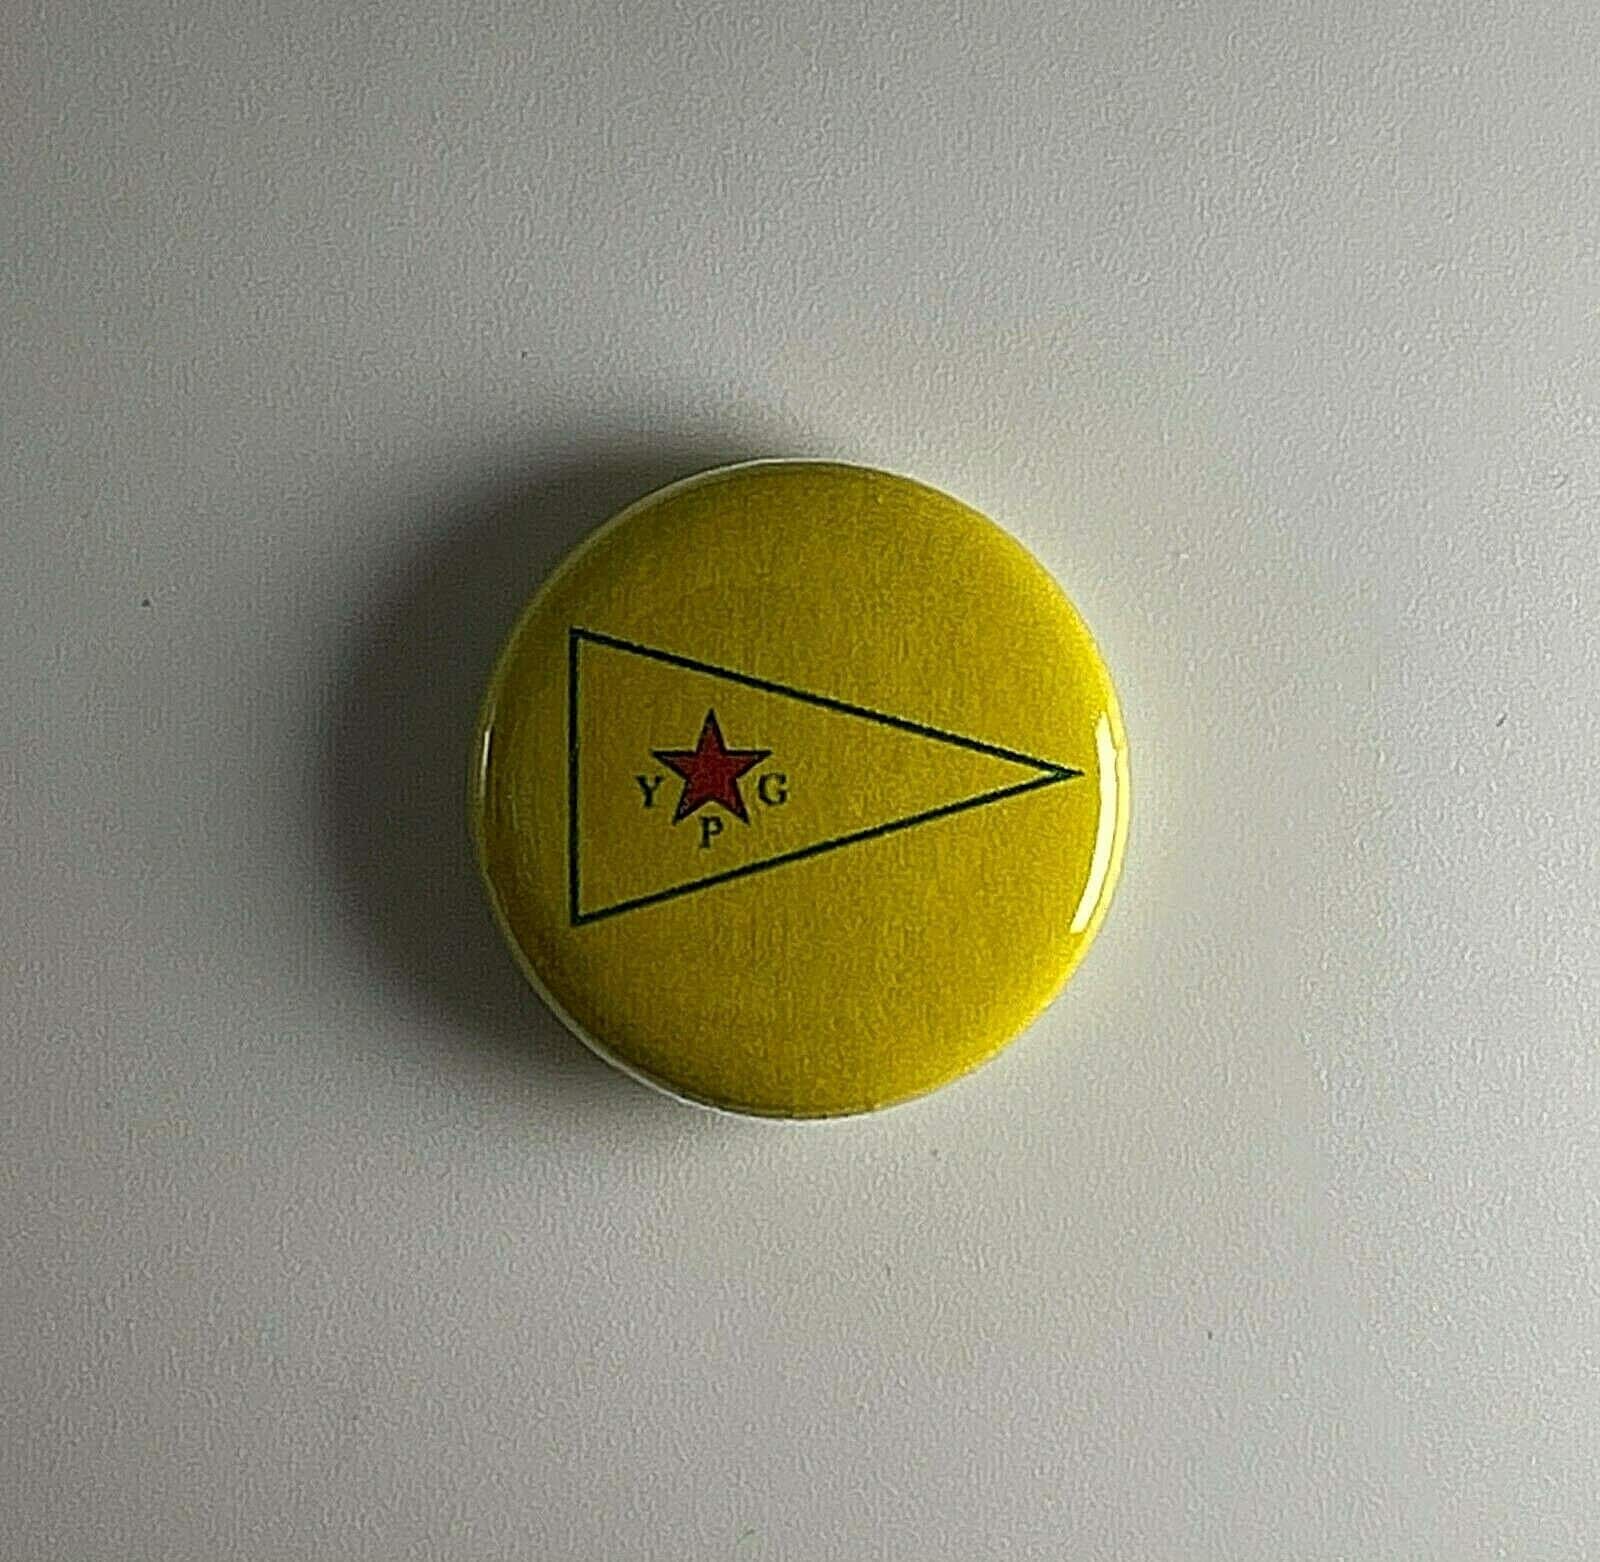 Ypg Flagge 1" Button Y003B Abzeichen Pin Rojava Volksverteidigung Einheit Kurdistan Ypj von Heavylowmerchandise